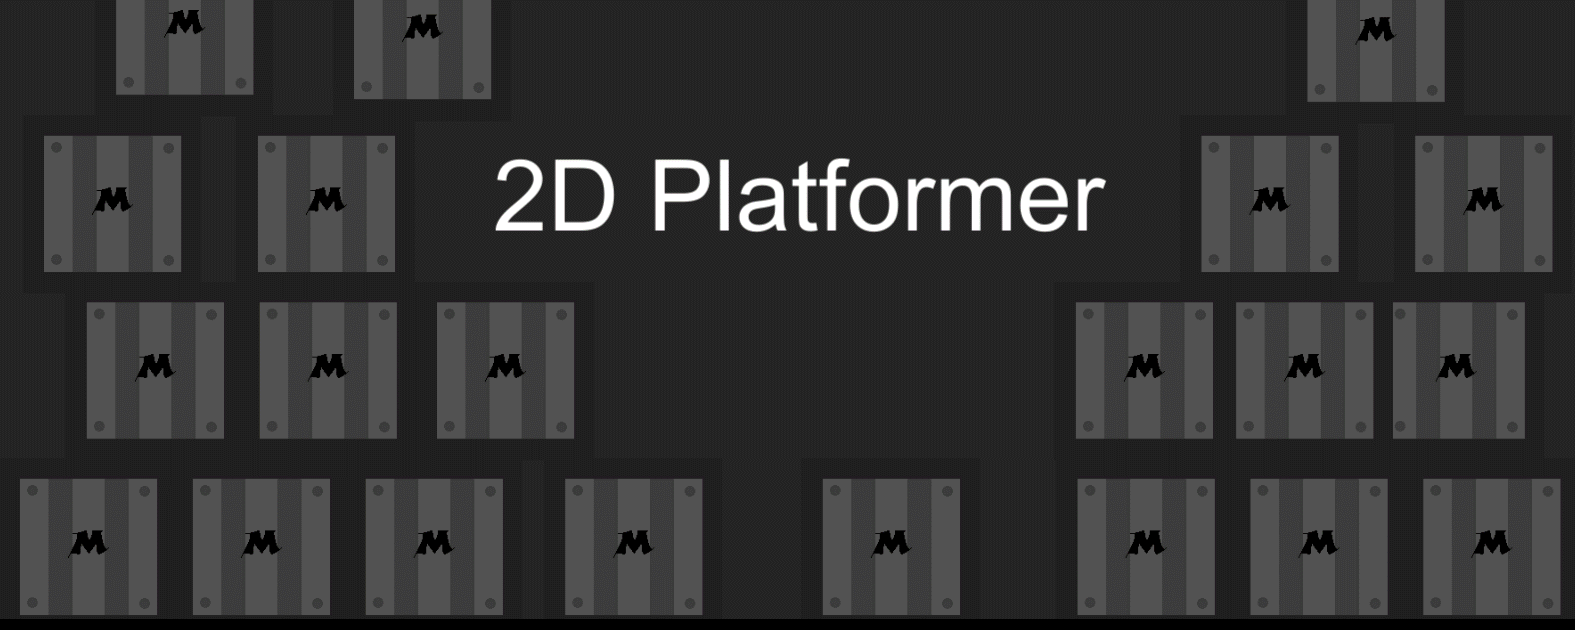 2D platformer